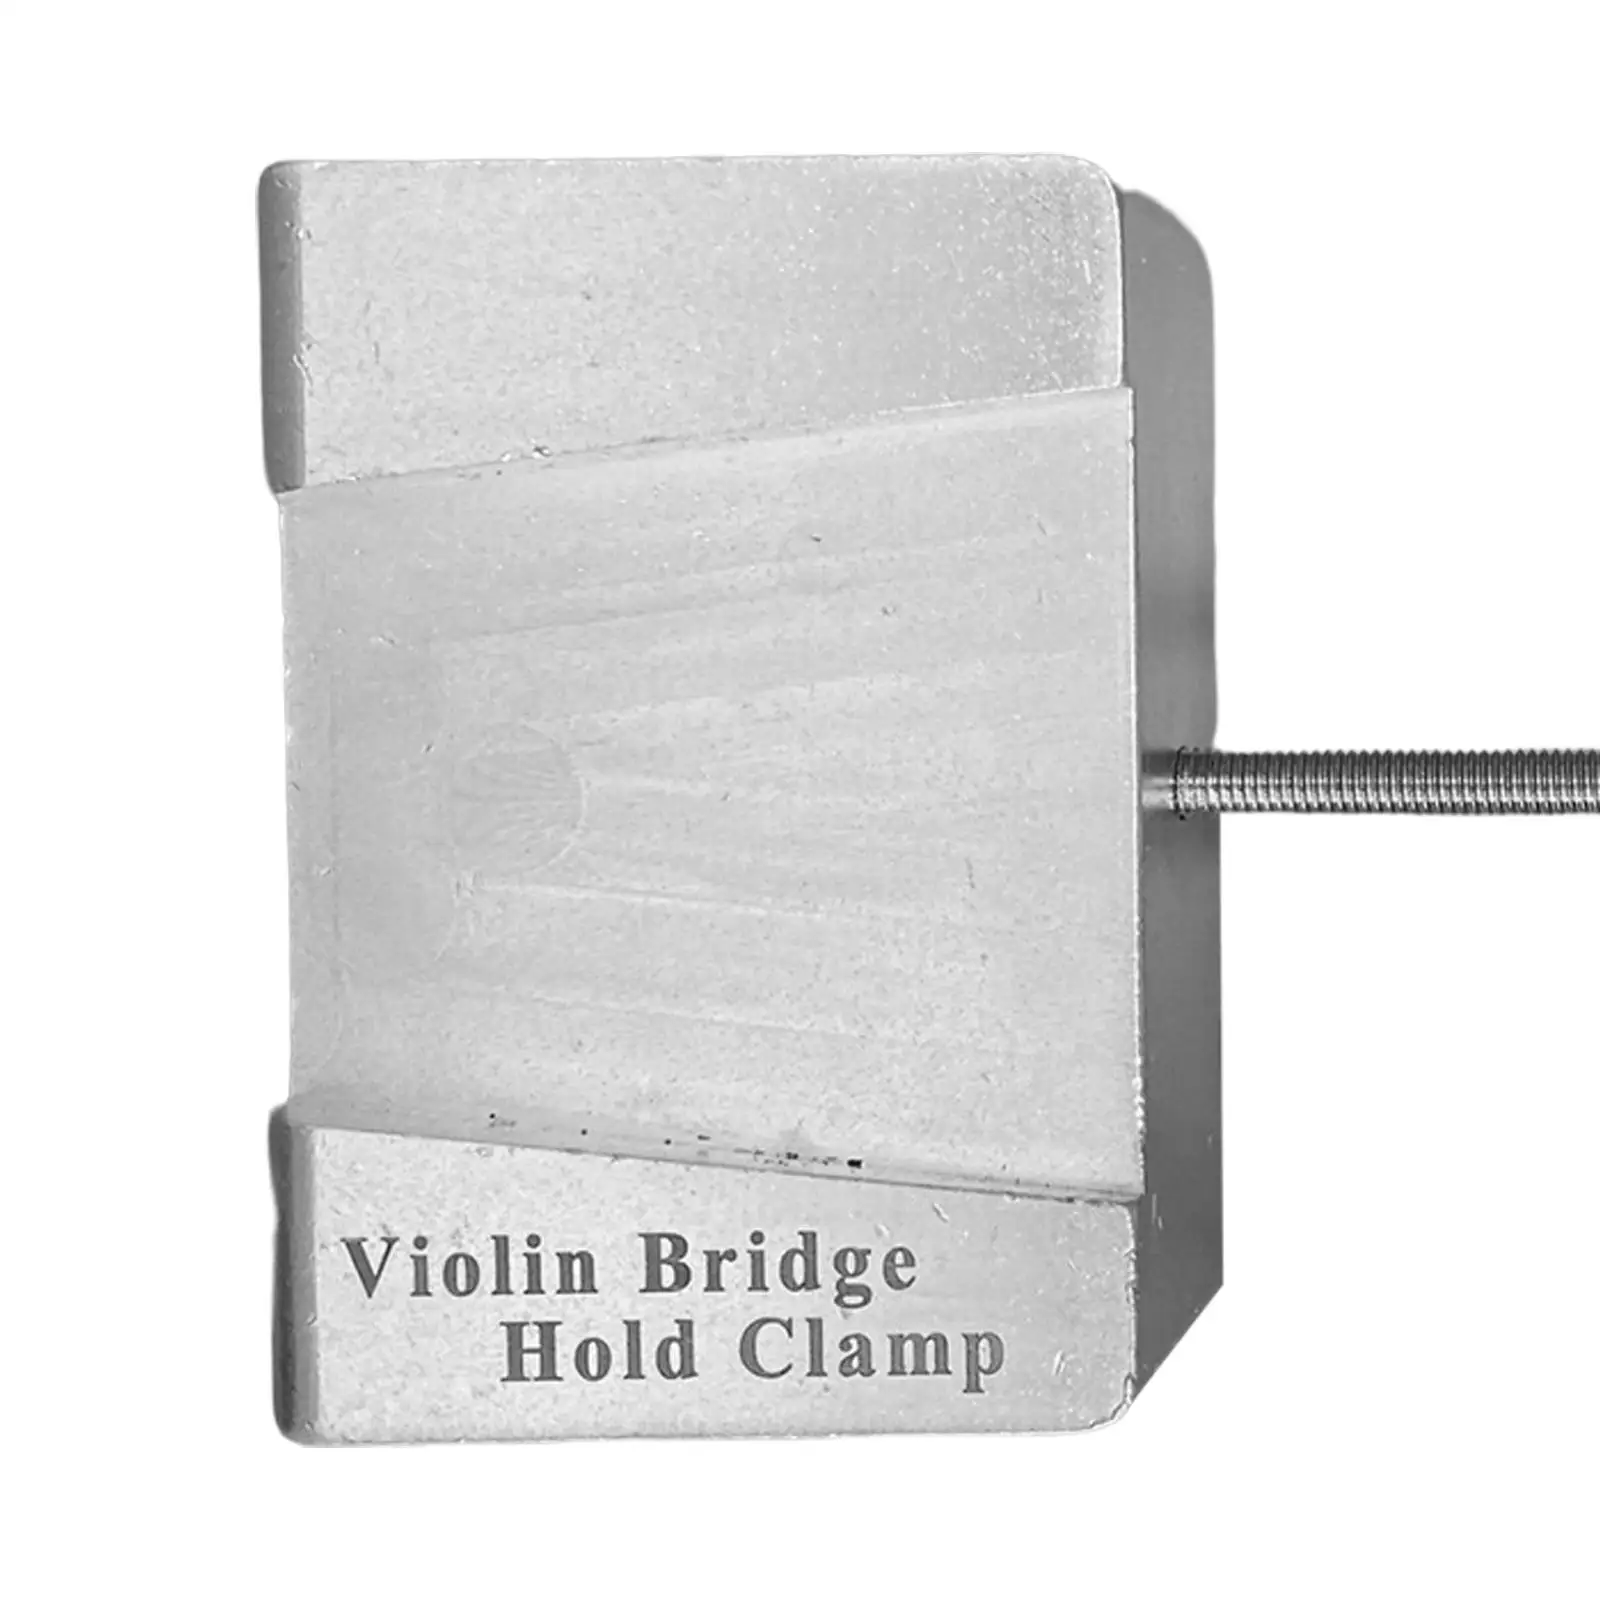 Violin Repair Code Violin Viola Bridge Clamp Tools Violin Parts Guitar Repair Portable Duarable Violin Bridge Holder Clamp